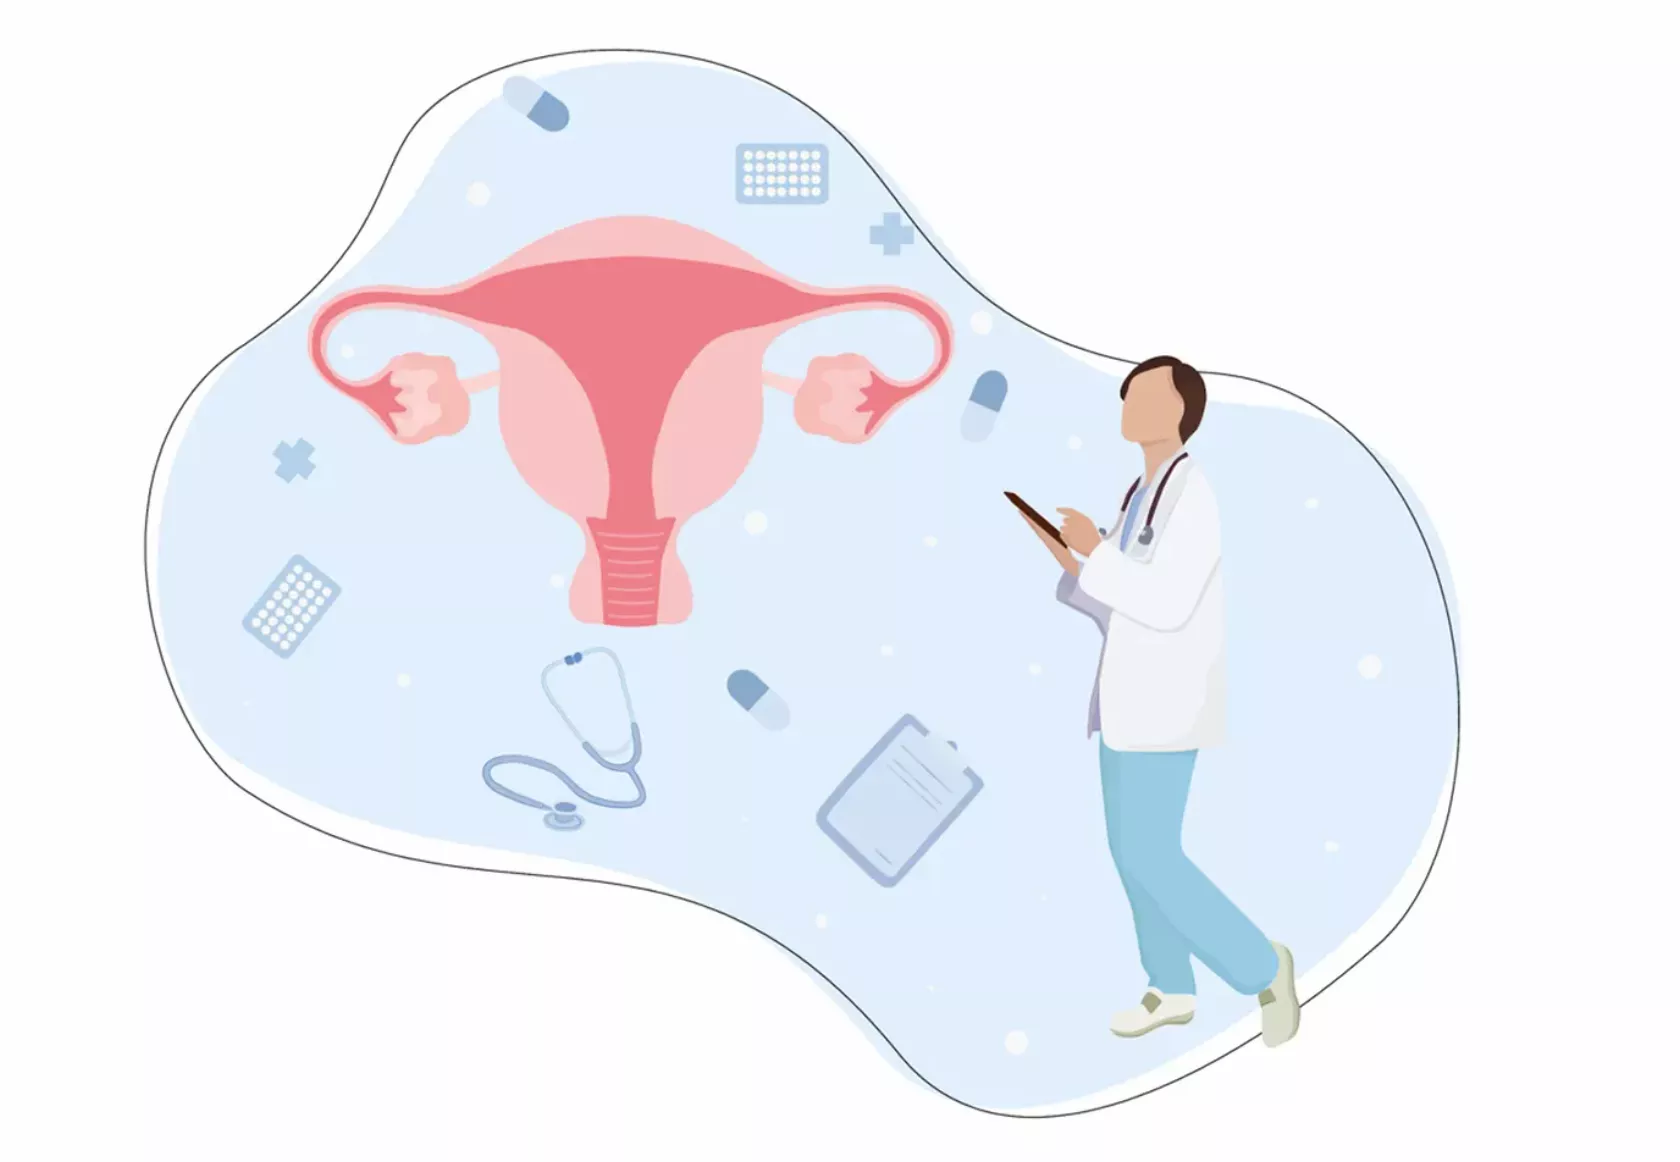 Illustration eine Person und ein Uterus mit Eileitern und Ovarien und medizinischem Zubehör.